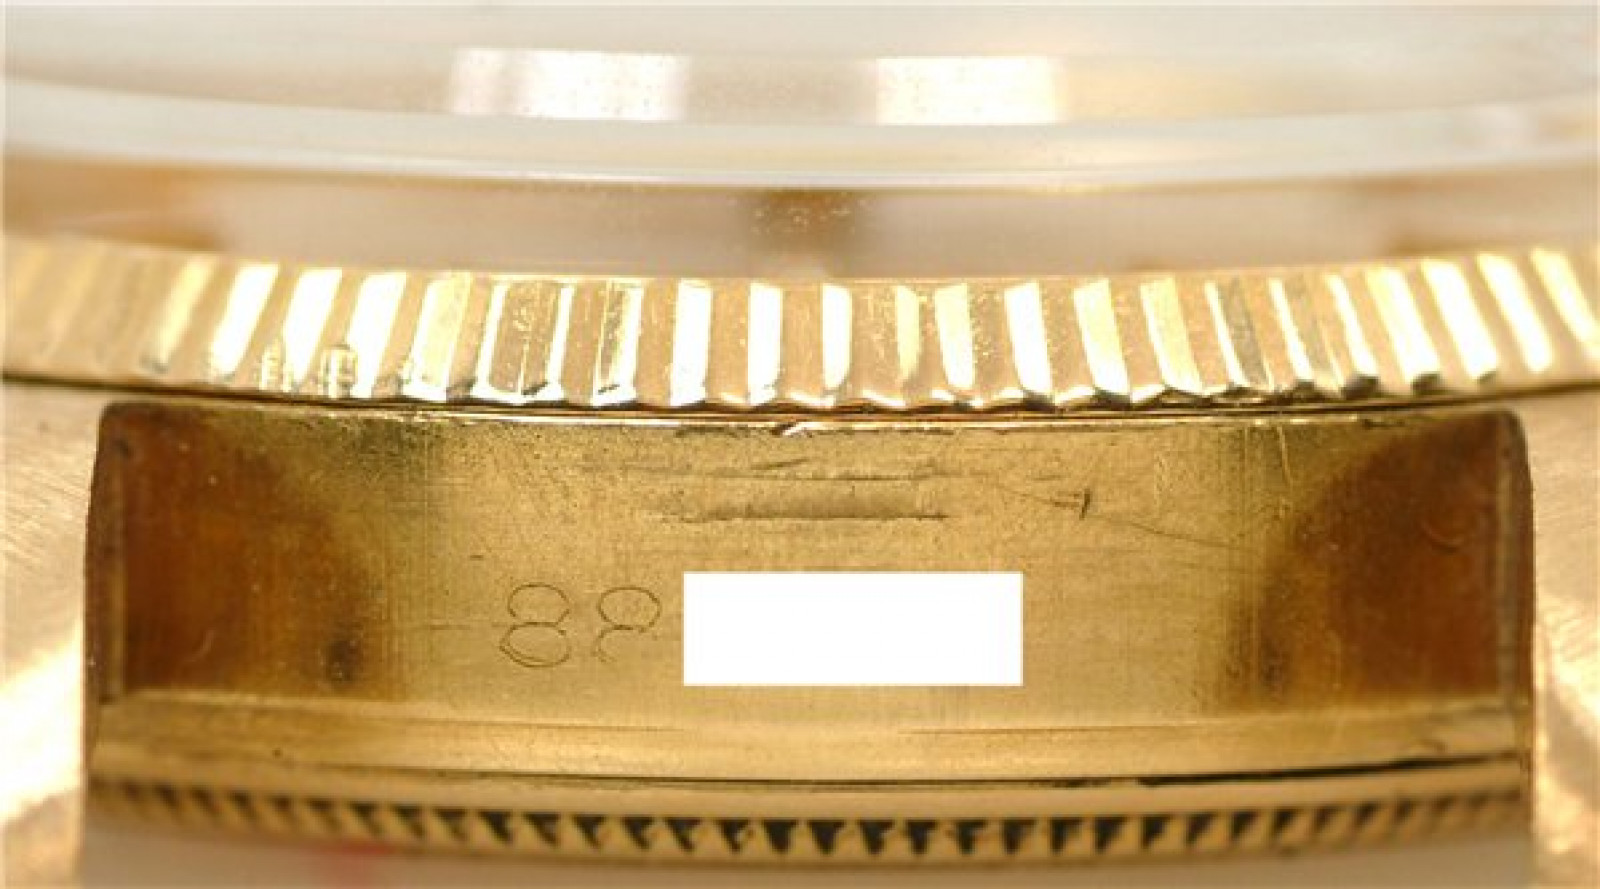 Vintage Rolex Date 1503 Gold Year 1952